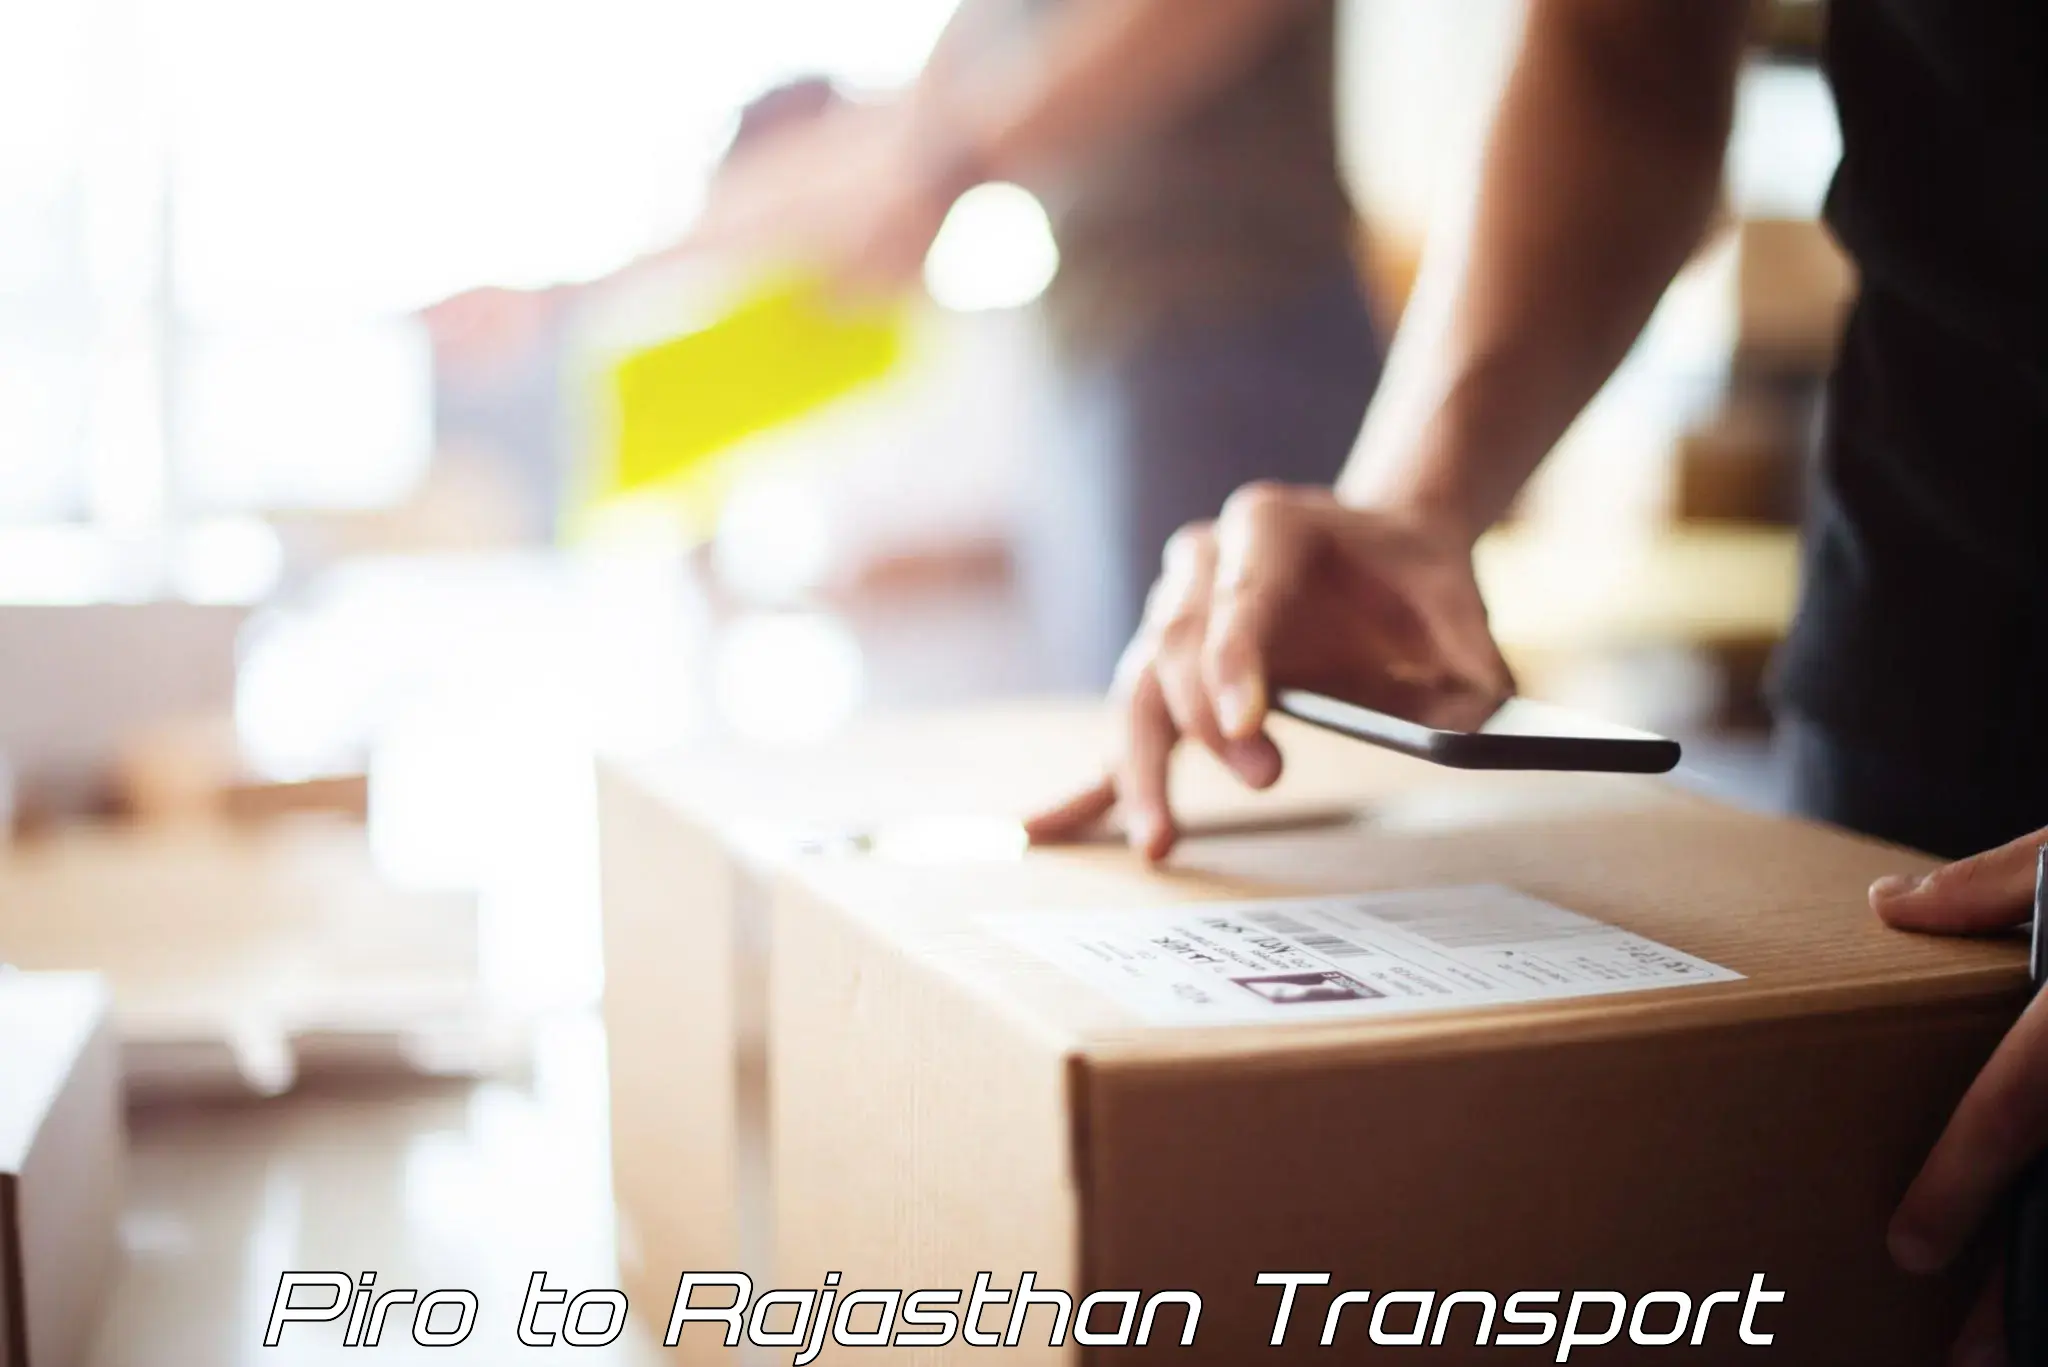 Furniture transport service Piro to Bassi